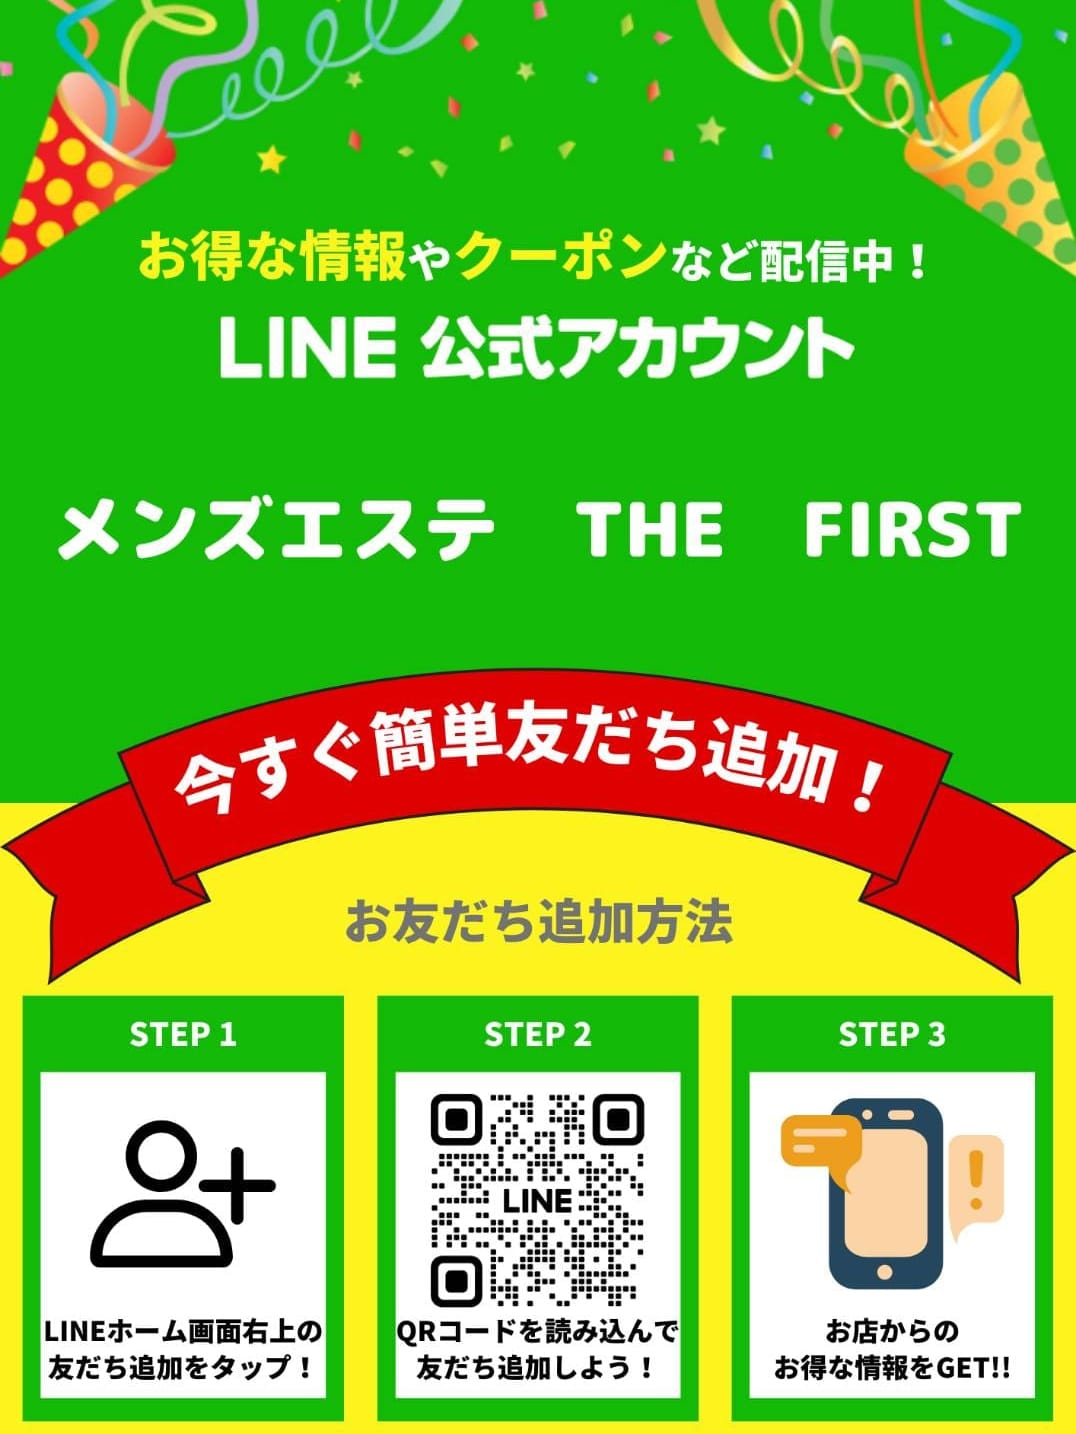 LINE公式アカウント【LINE公式アカウント簡単予約】